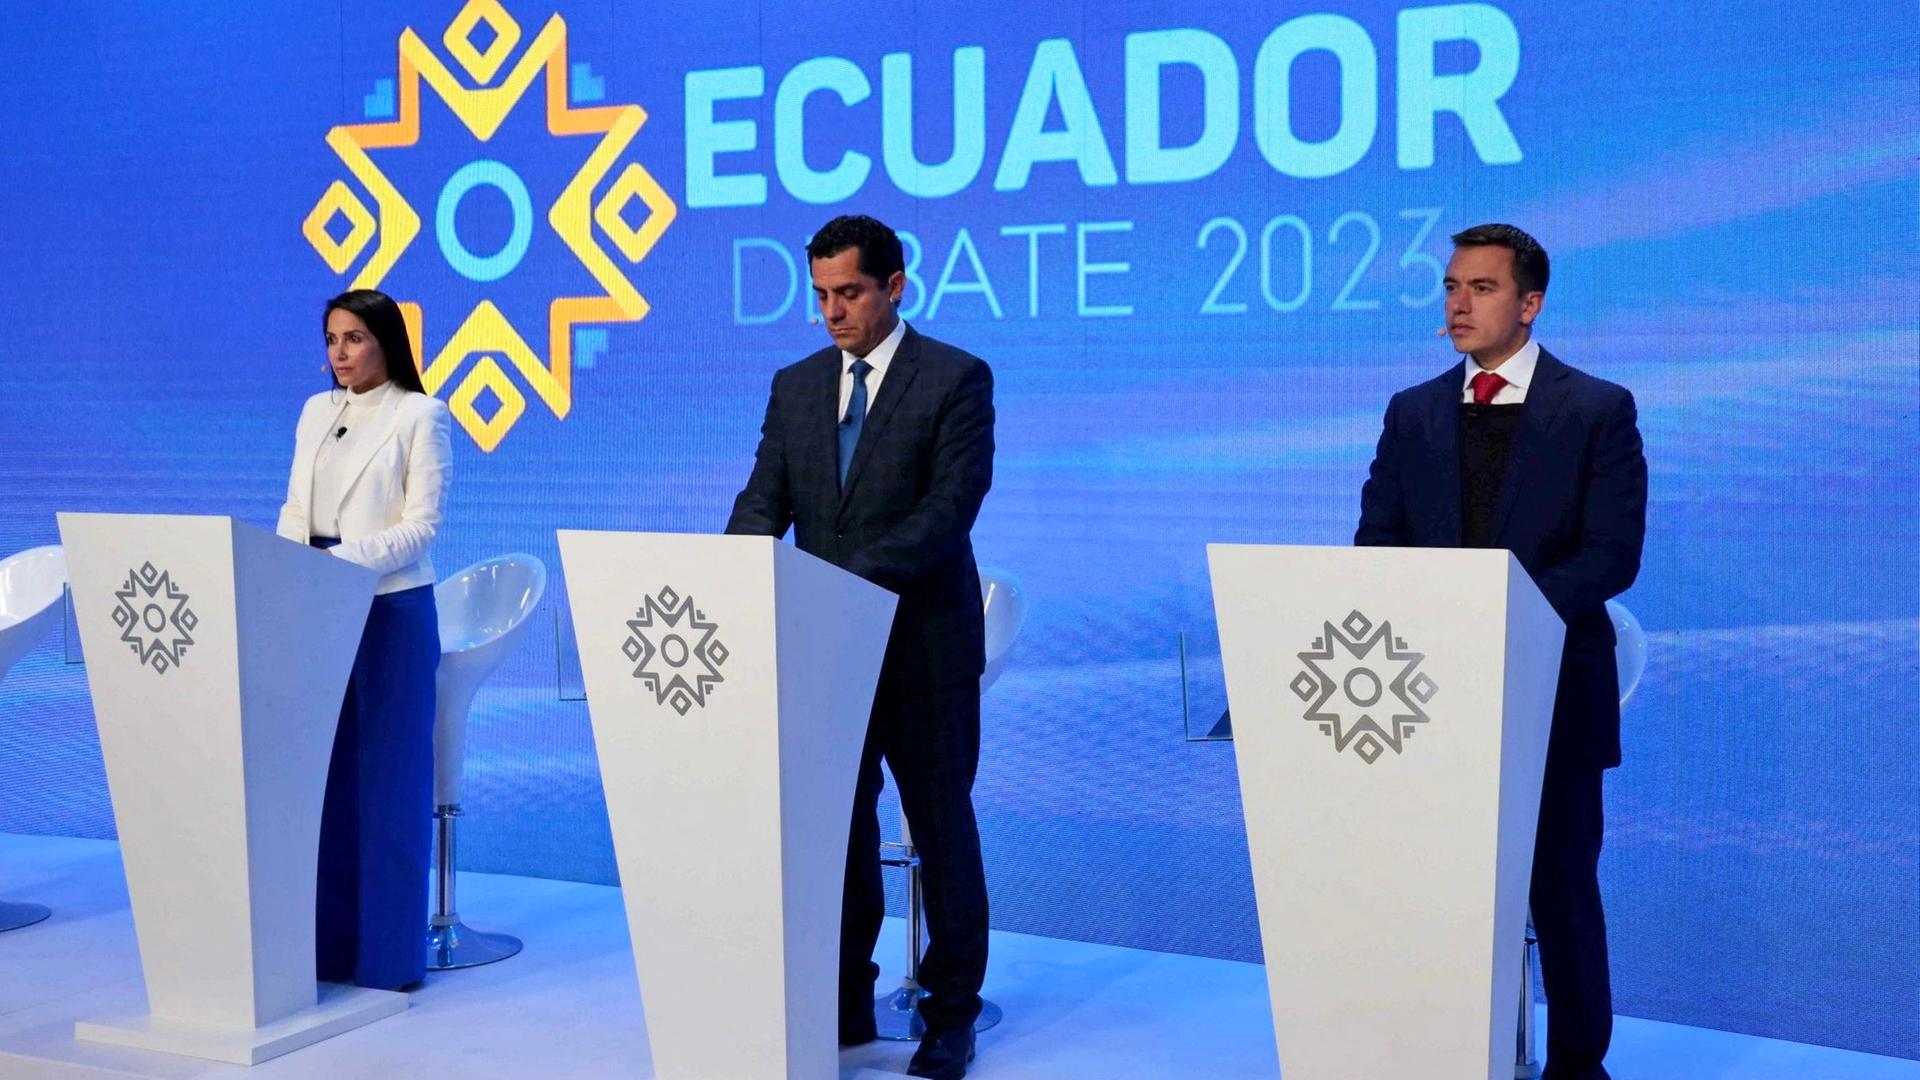 Die Präsidentschaftskandidaten Gonzalz, Hervaz und Noboa stehen bei einem Fernseh-Duell nebeneinander an jeweils einem weißen Rednerpult.